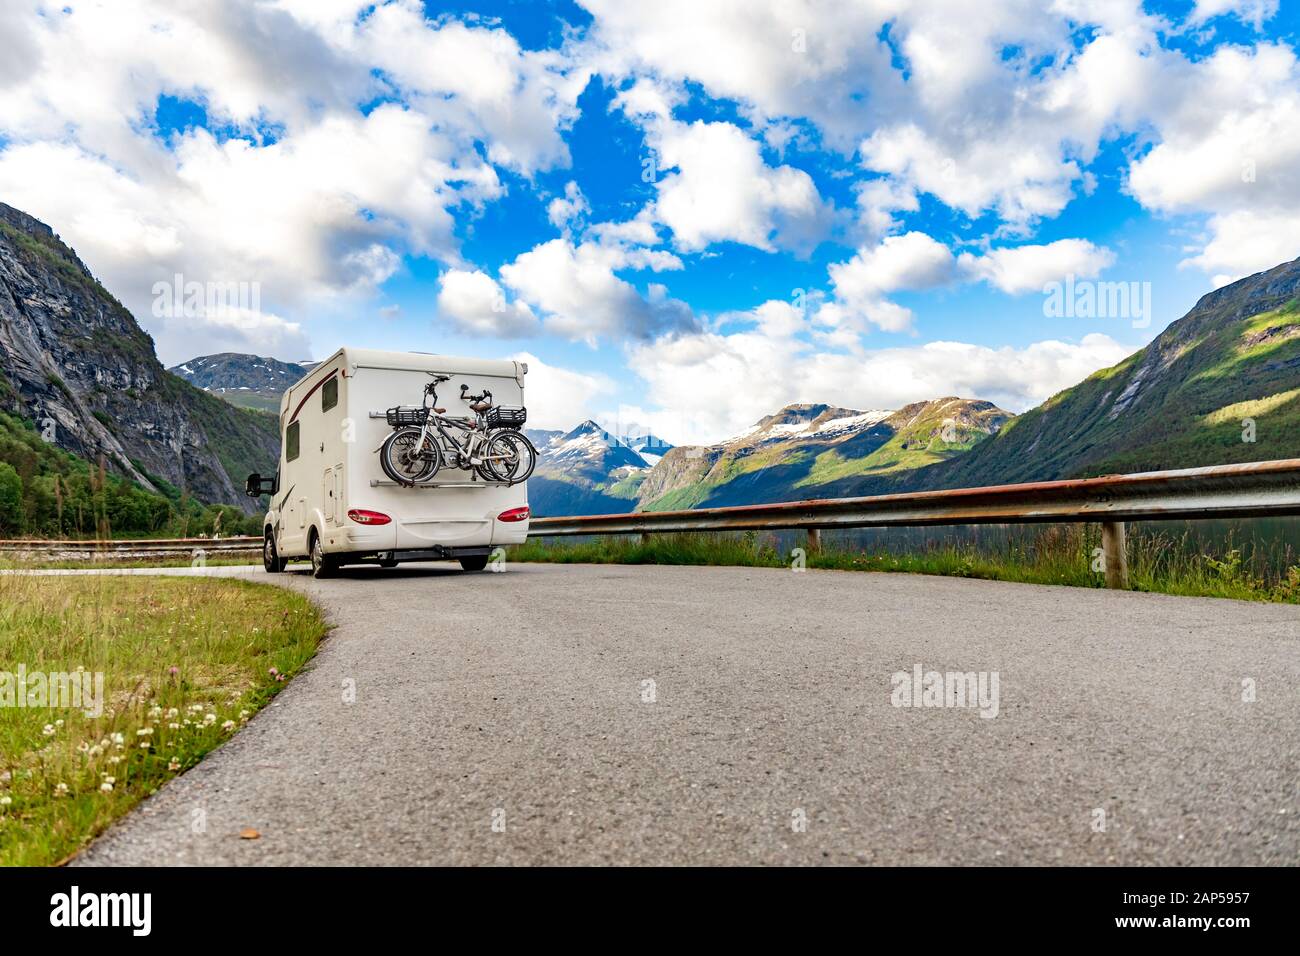 Family Vacation Travel RV, viaje de vacaciones en autocaravana, caravana alquiler de vacaciones. Hermosa naturaleza noruega paisaje natural. Foto de stock